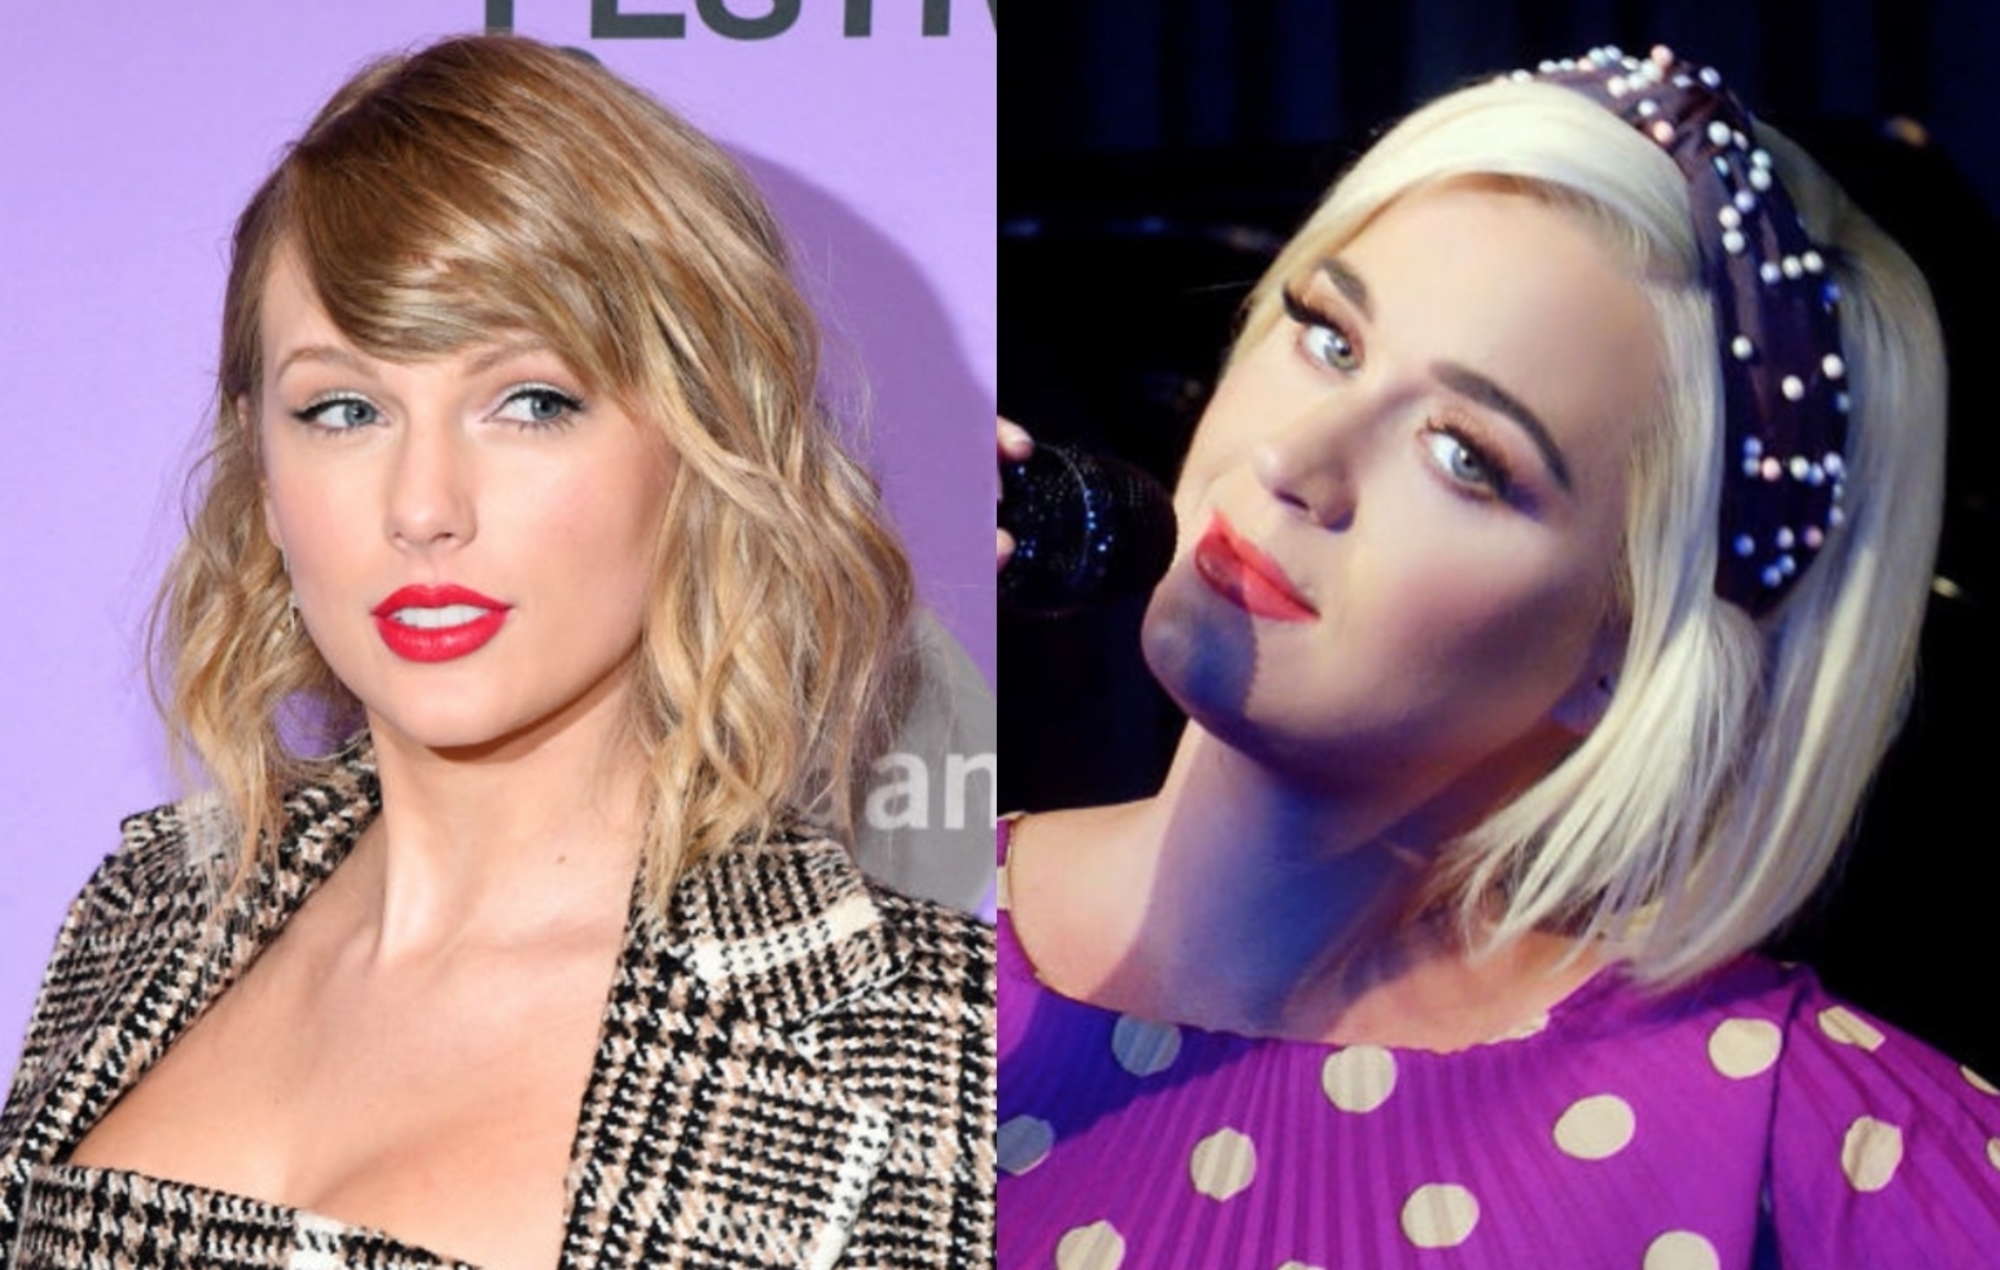 Taylor Swift celebra el nuevo video musical de Katy Perry, lo llama 